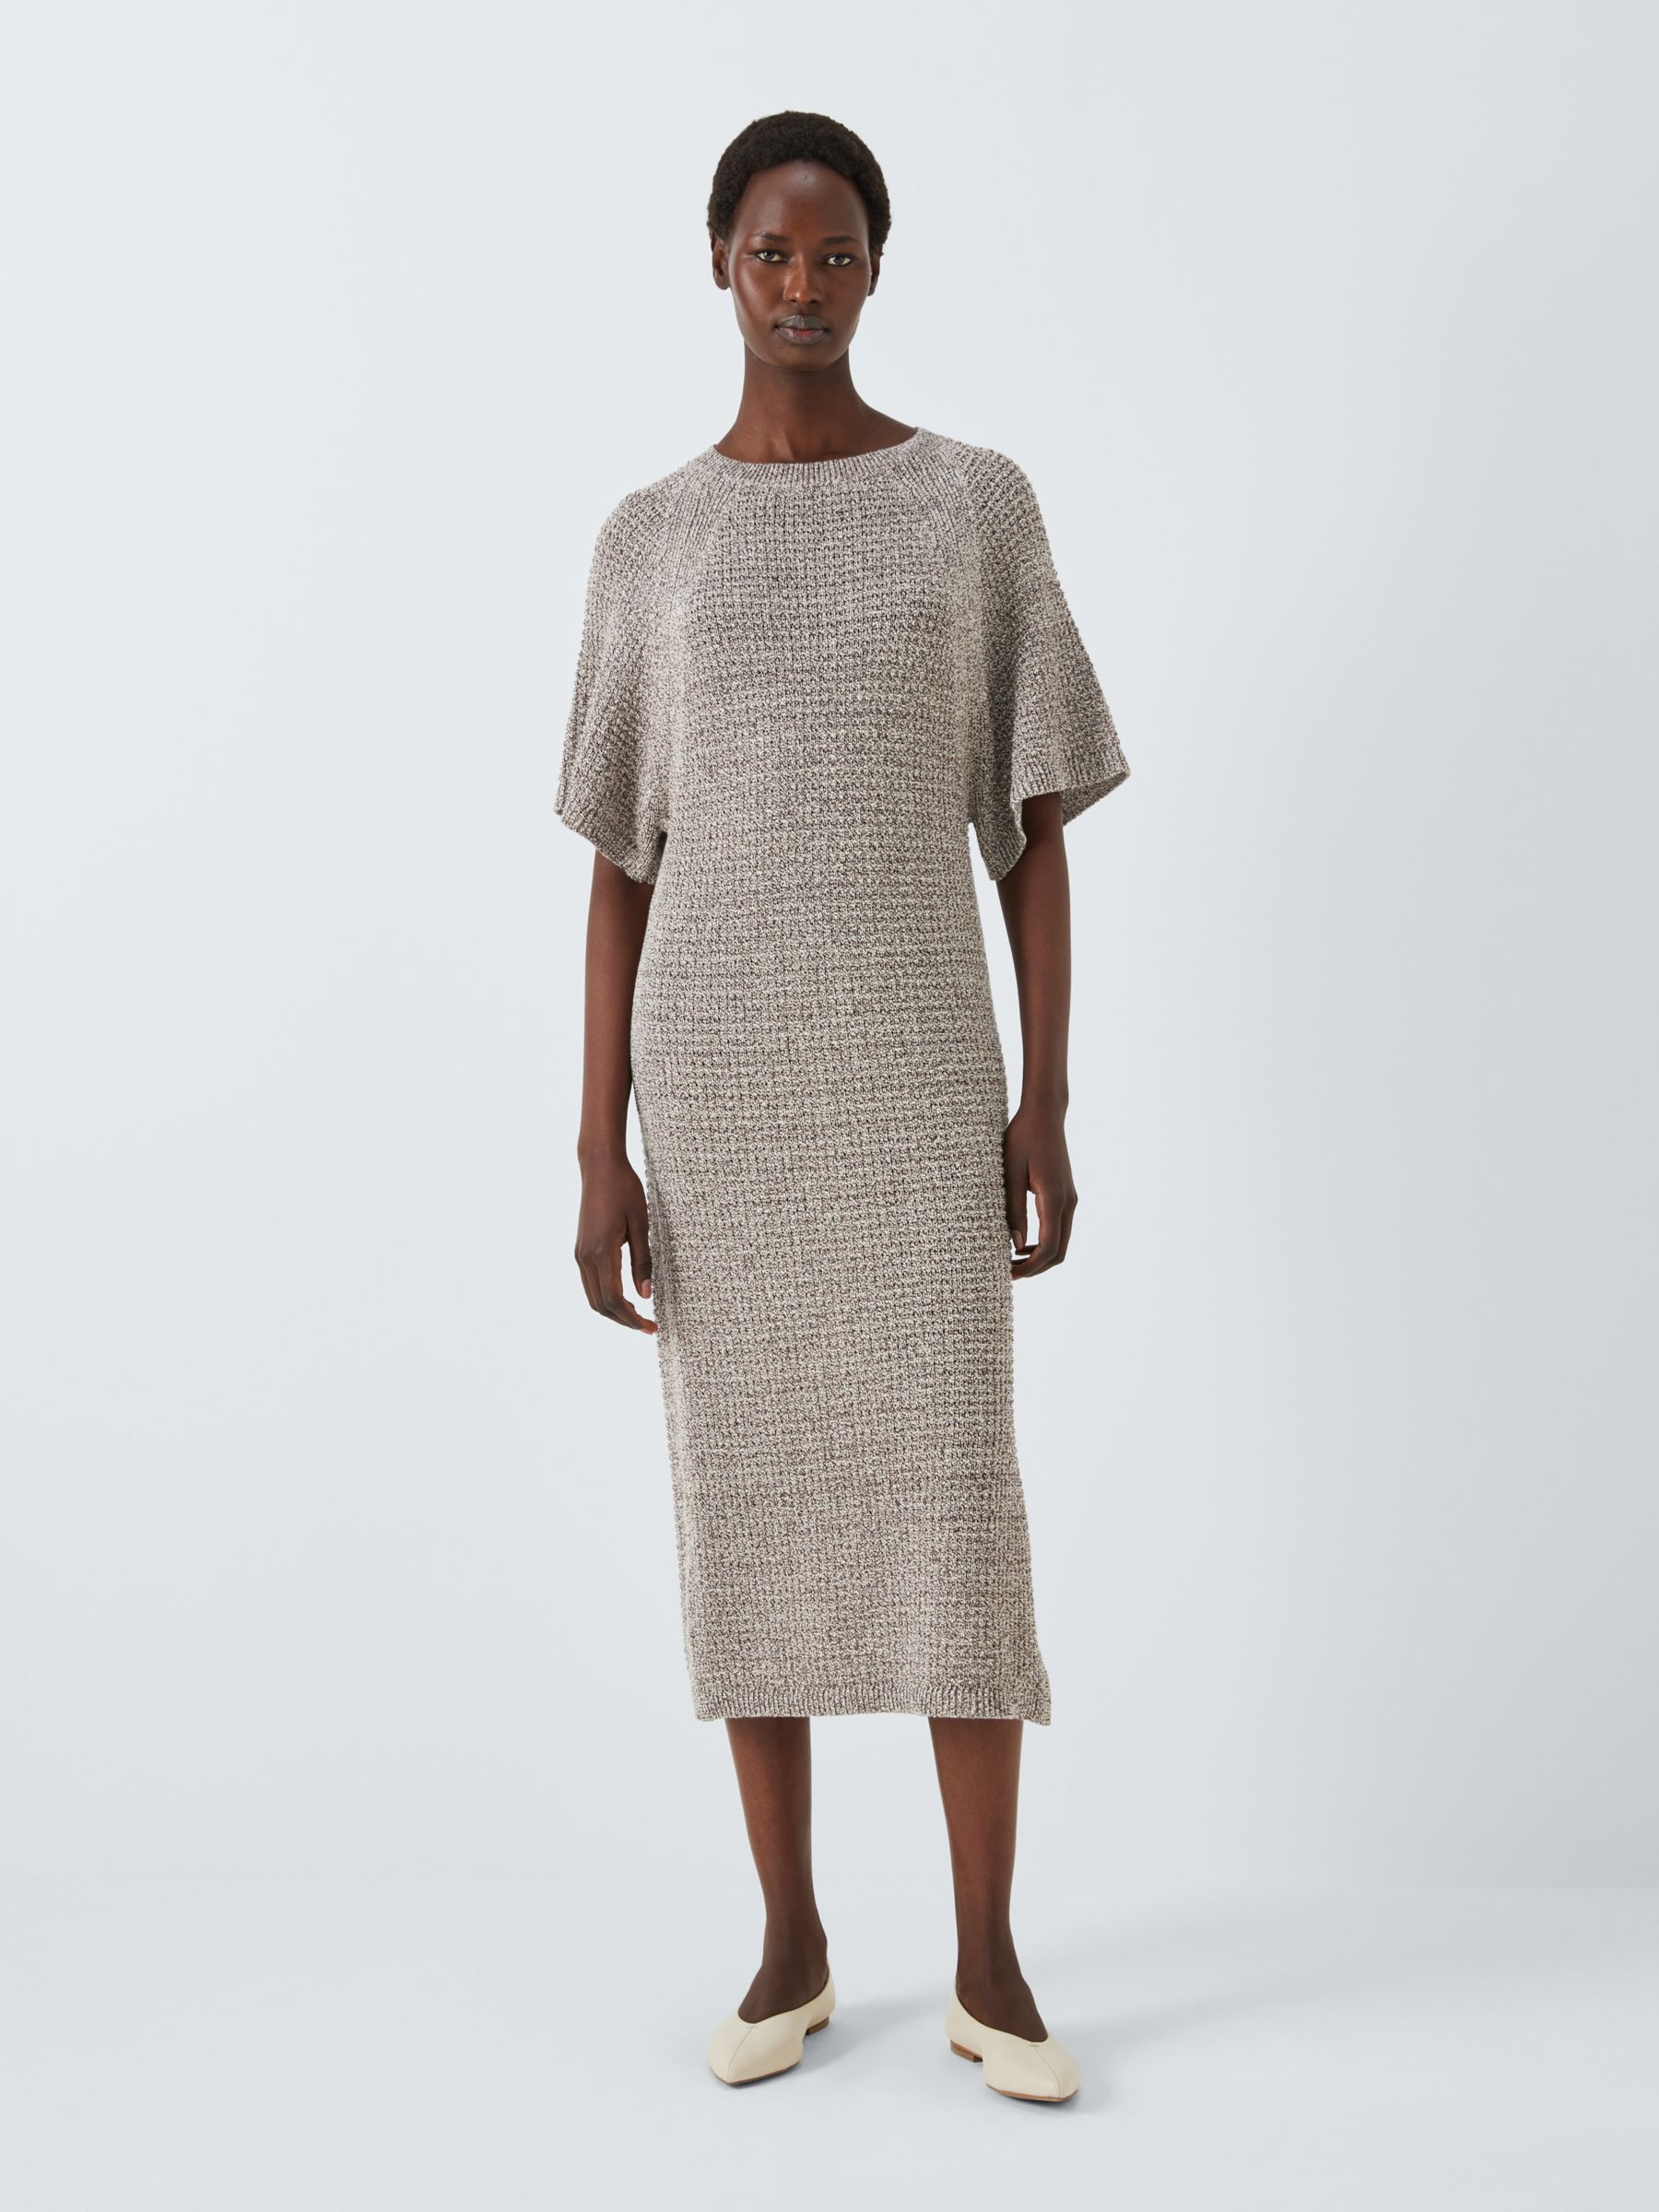 John Lewis Metallic Knitted Dress, Natural, 8